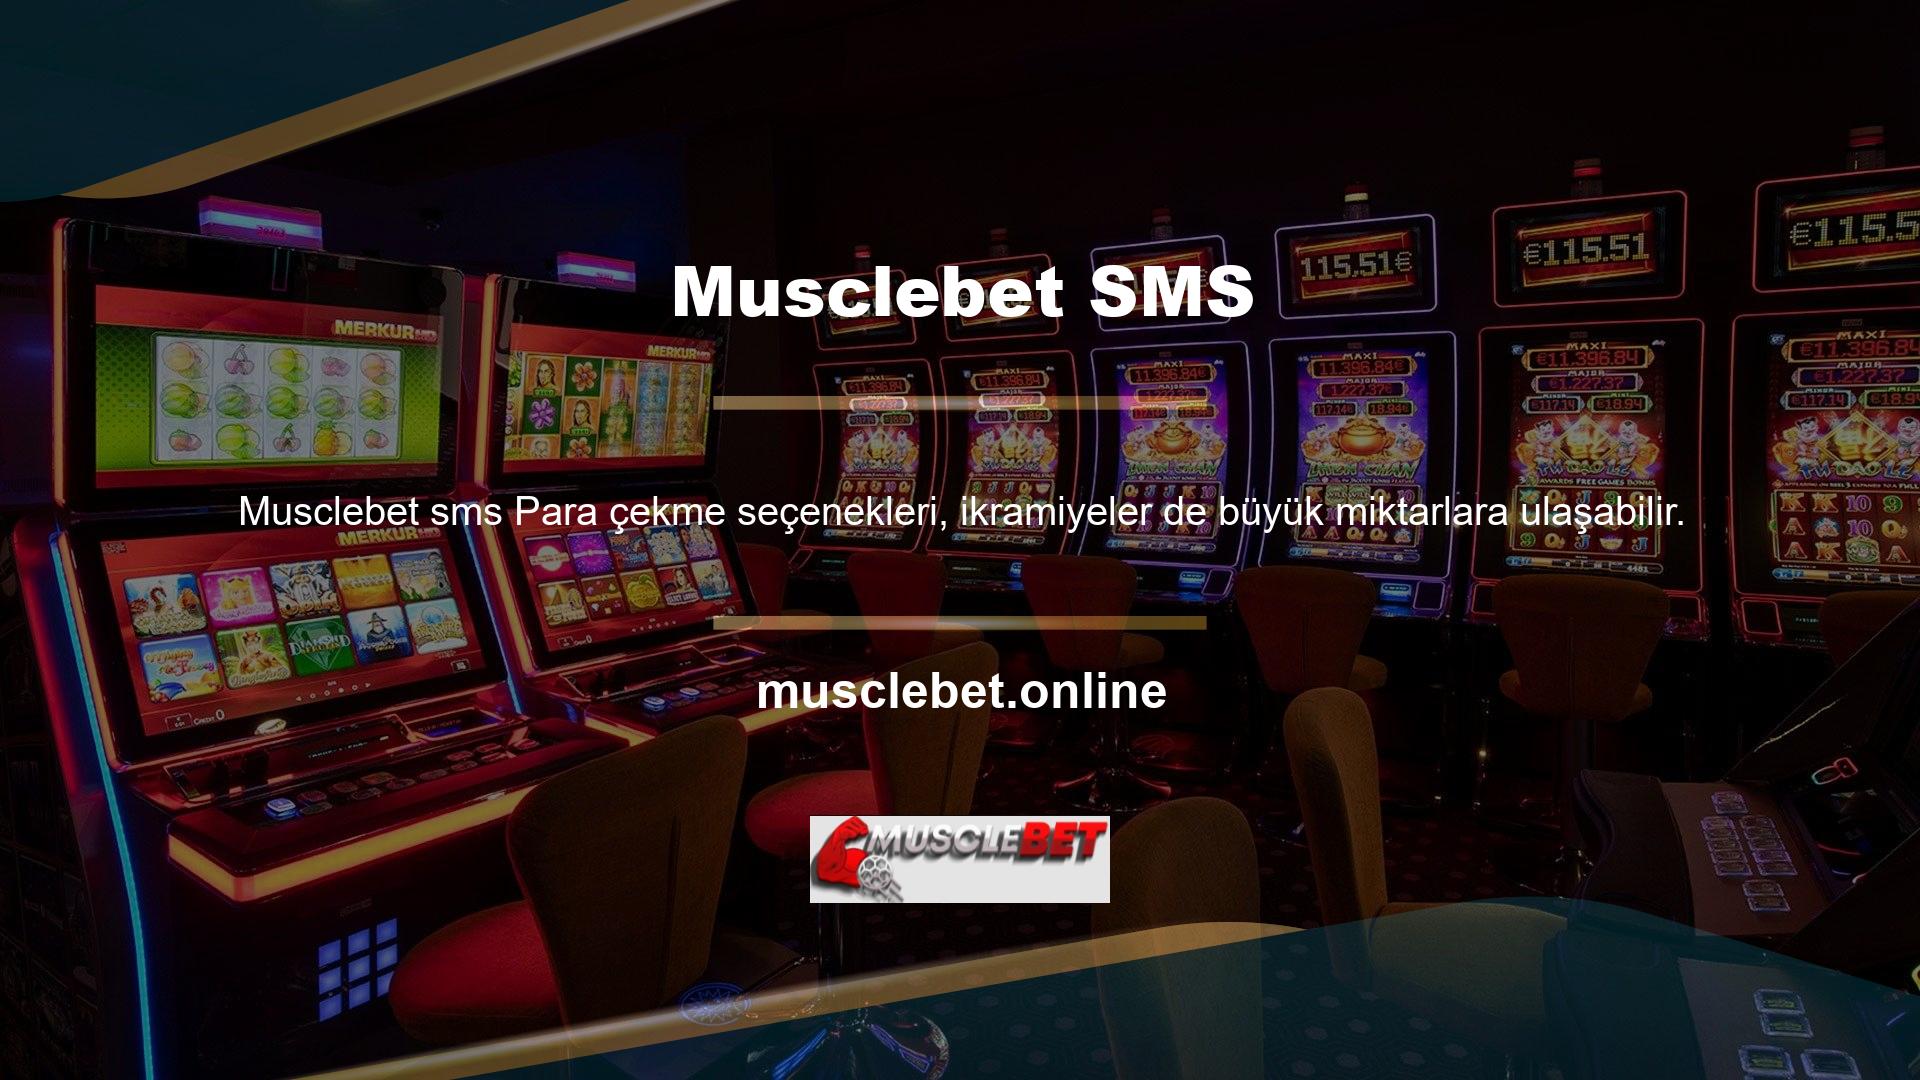 Sitede pek çok oyun seçeneği var ama e-posta ile büyük bahis oynuyorsanız oyuncuların gerçek zamanlı olarak oynamasını engelleyebilir misiniz Engellemek için mi kullanılıyor Musclebet SMS durdurma rutini ile interaktif yöntemi kullanabilirsiniz